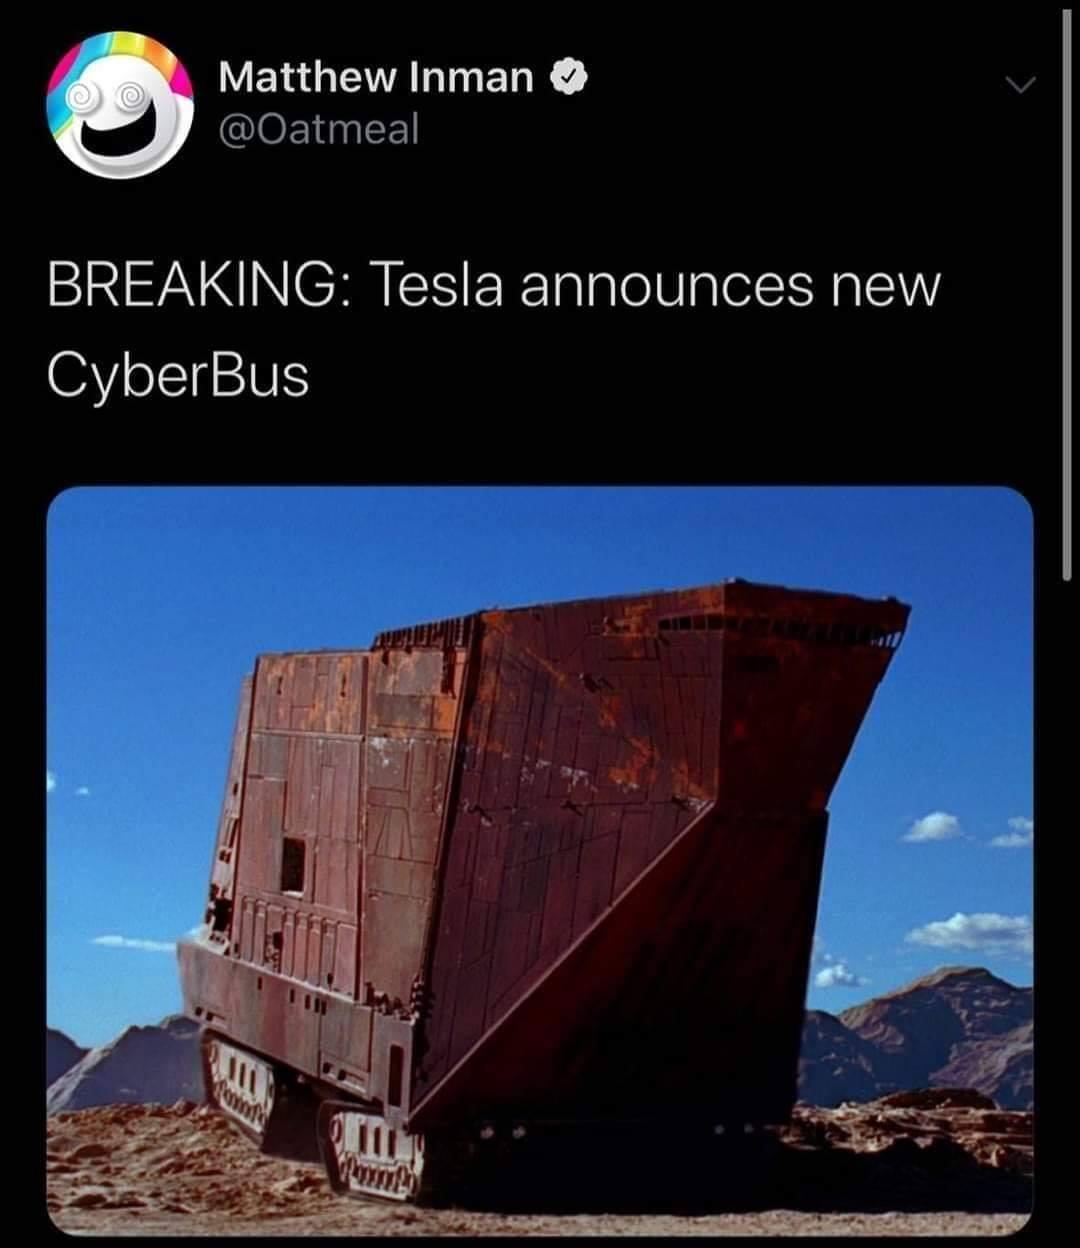 dank memes - cybertruck meme star wars - Matthew Inman Breaking Tesla announces new CyberBus